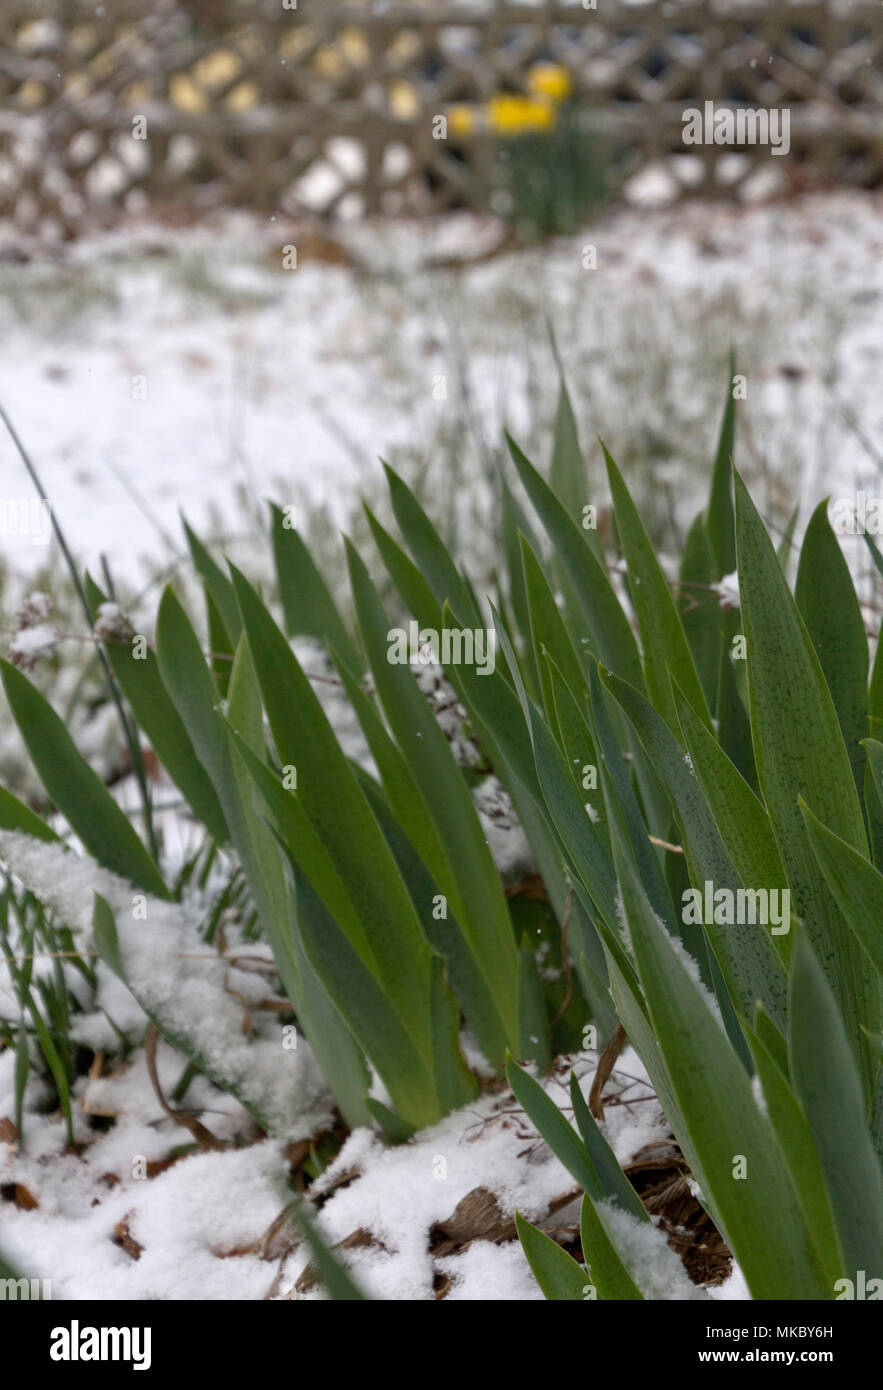 Feder Iris Blume Pflanzen aus dem Boden in einem späten Winter Schnee  ausbrechen Stockfotografie - Alamy